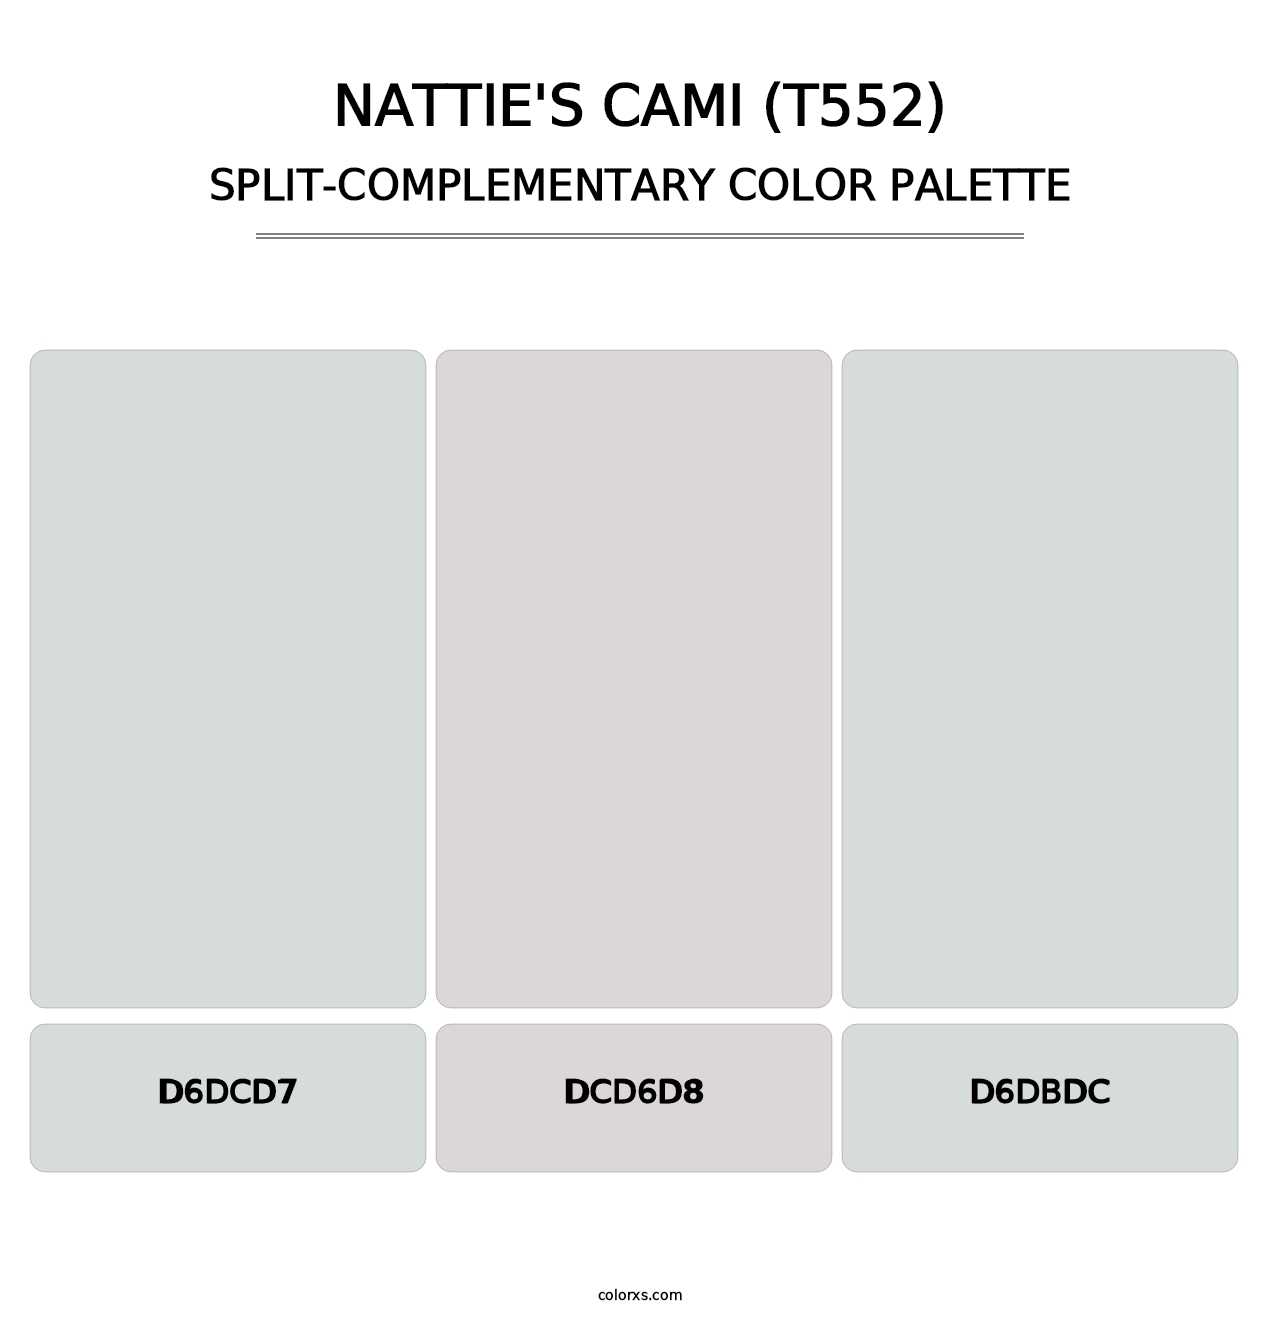 Nattie's Cami (T552) - Split-Complementary Color Palette